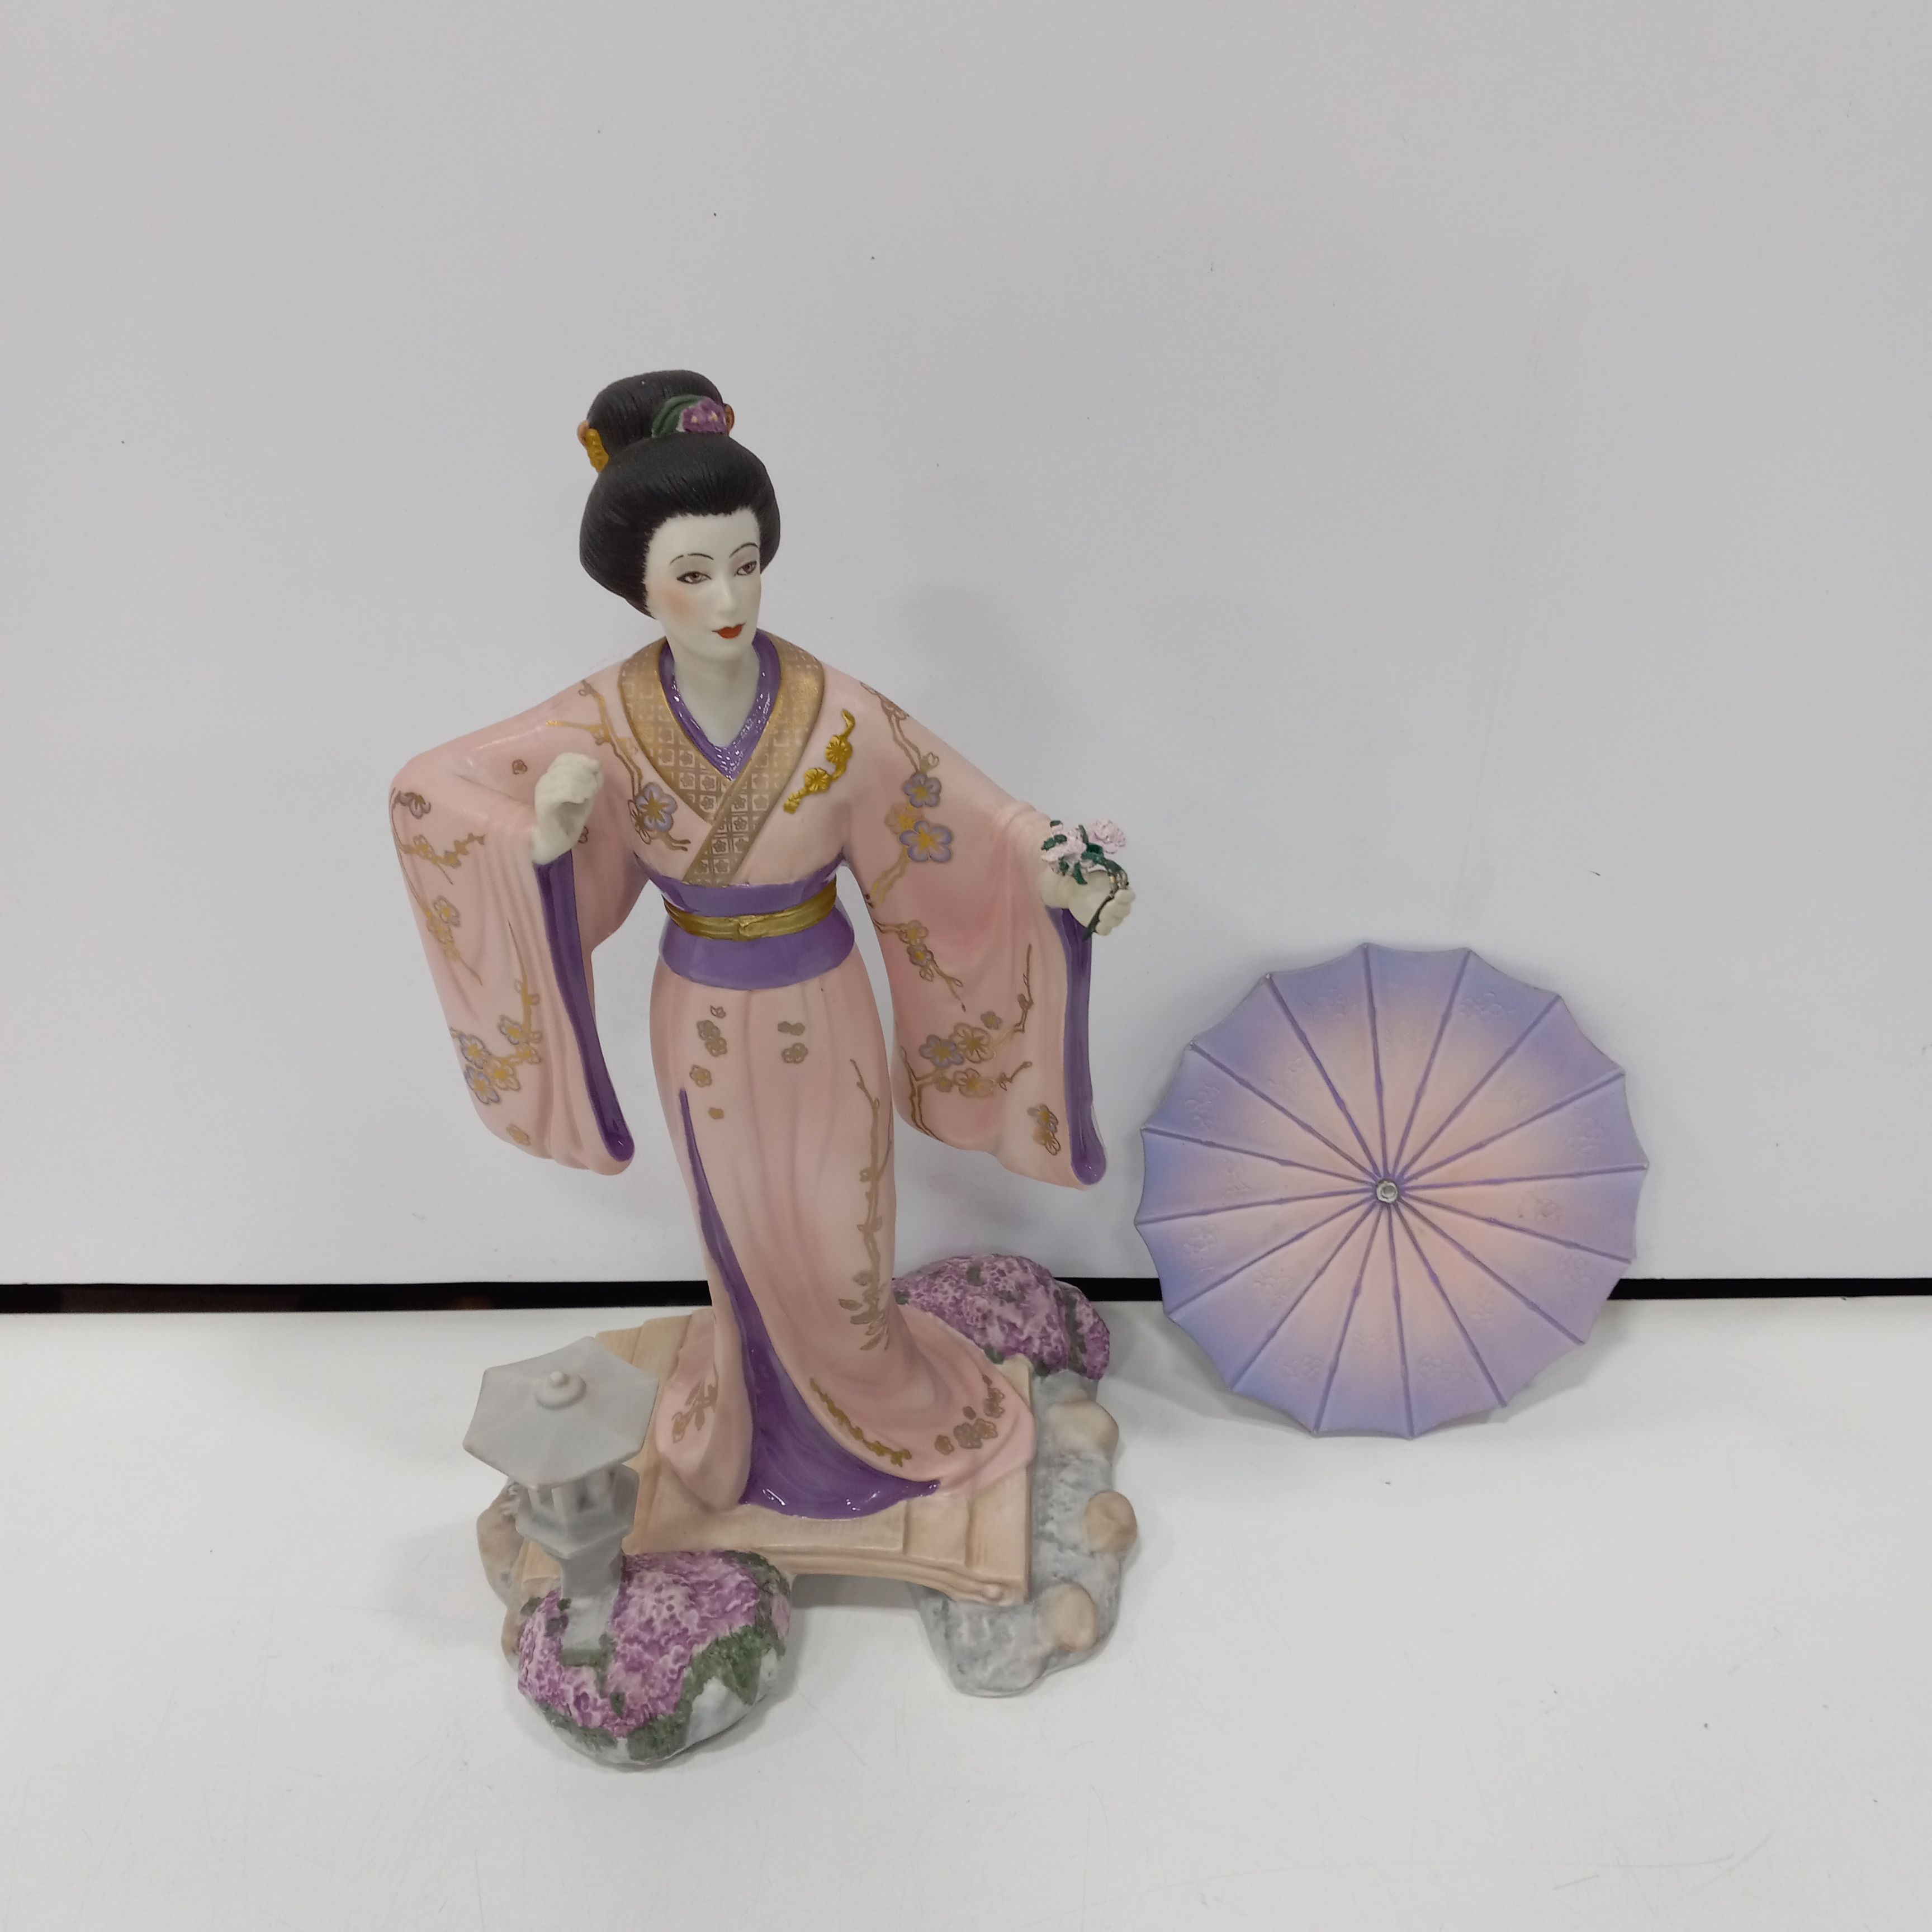 Vintage porcelain Foreign figurine Japanese elegant geisha with a fan  Japanese porcelain figurine mini girl in kimono